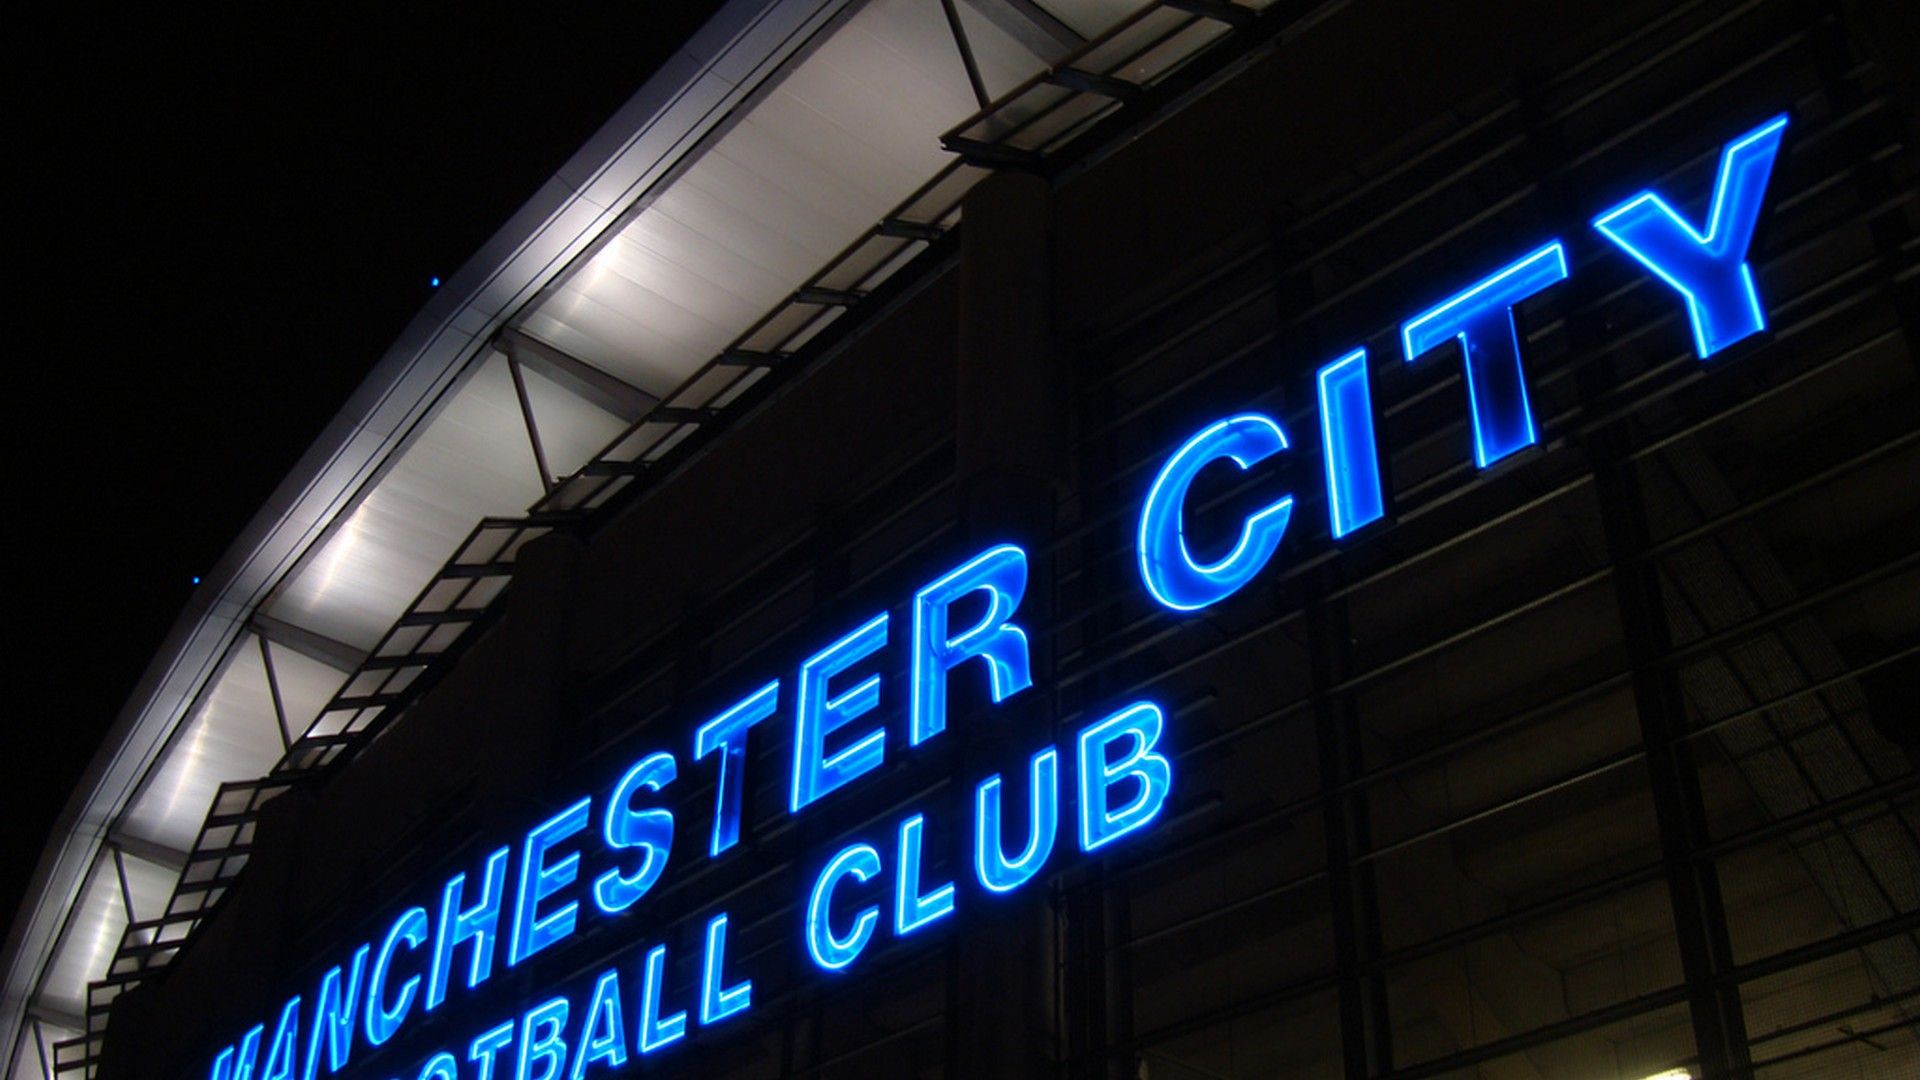 Manchester City HD Wallpaper Football Wallpaper